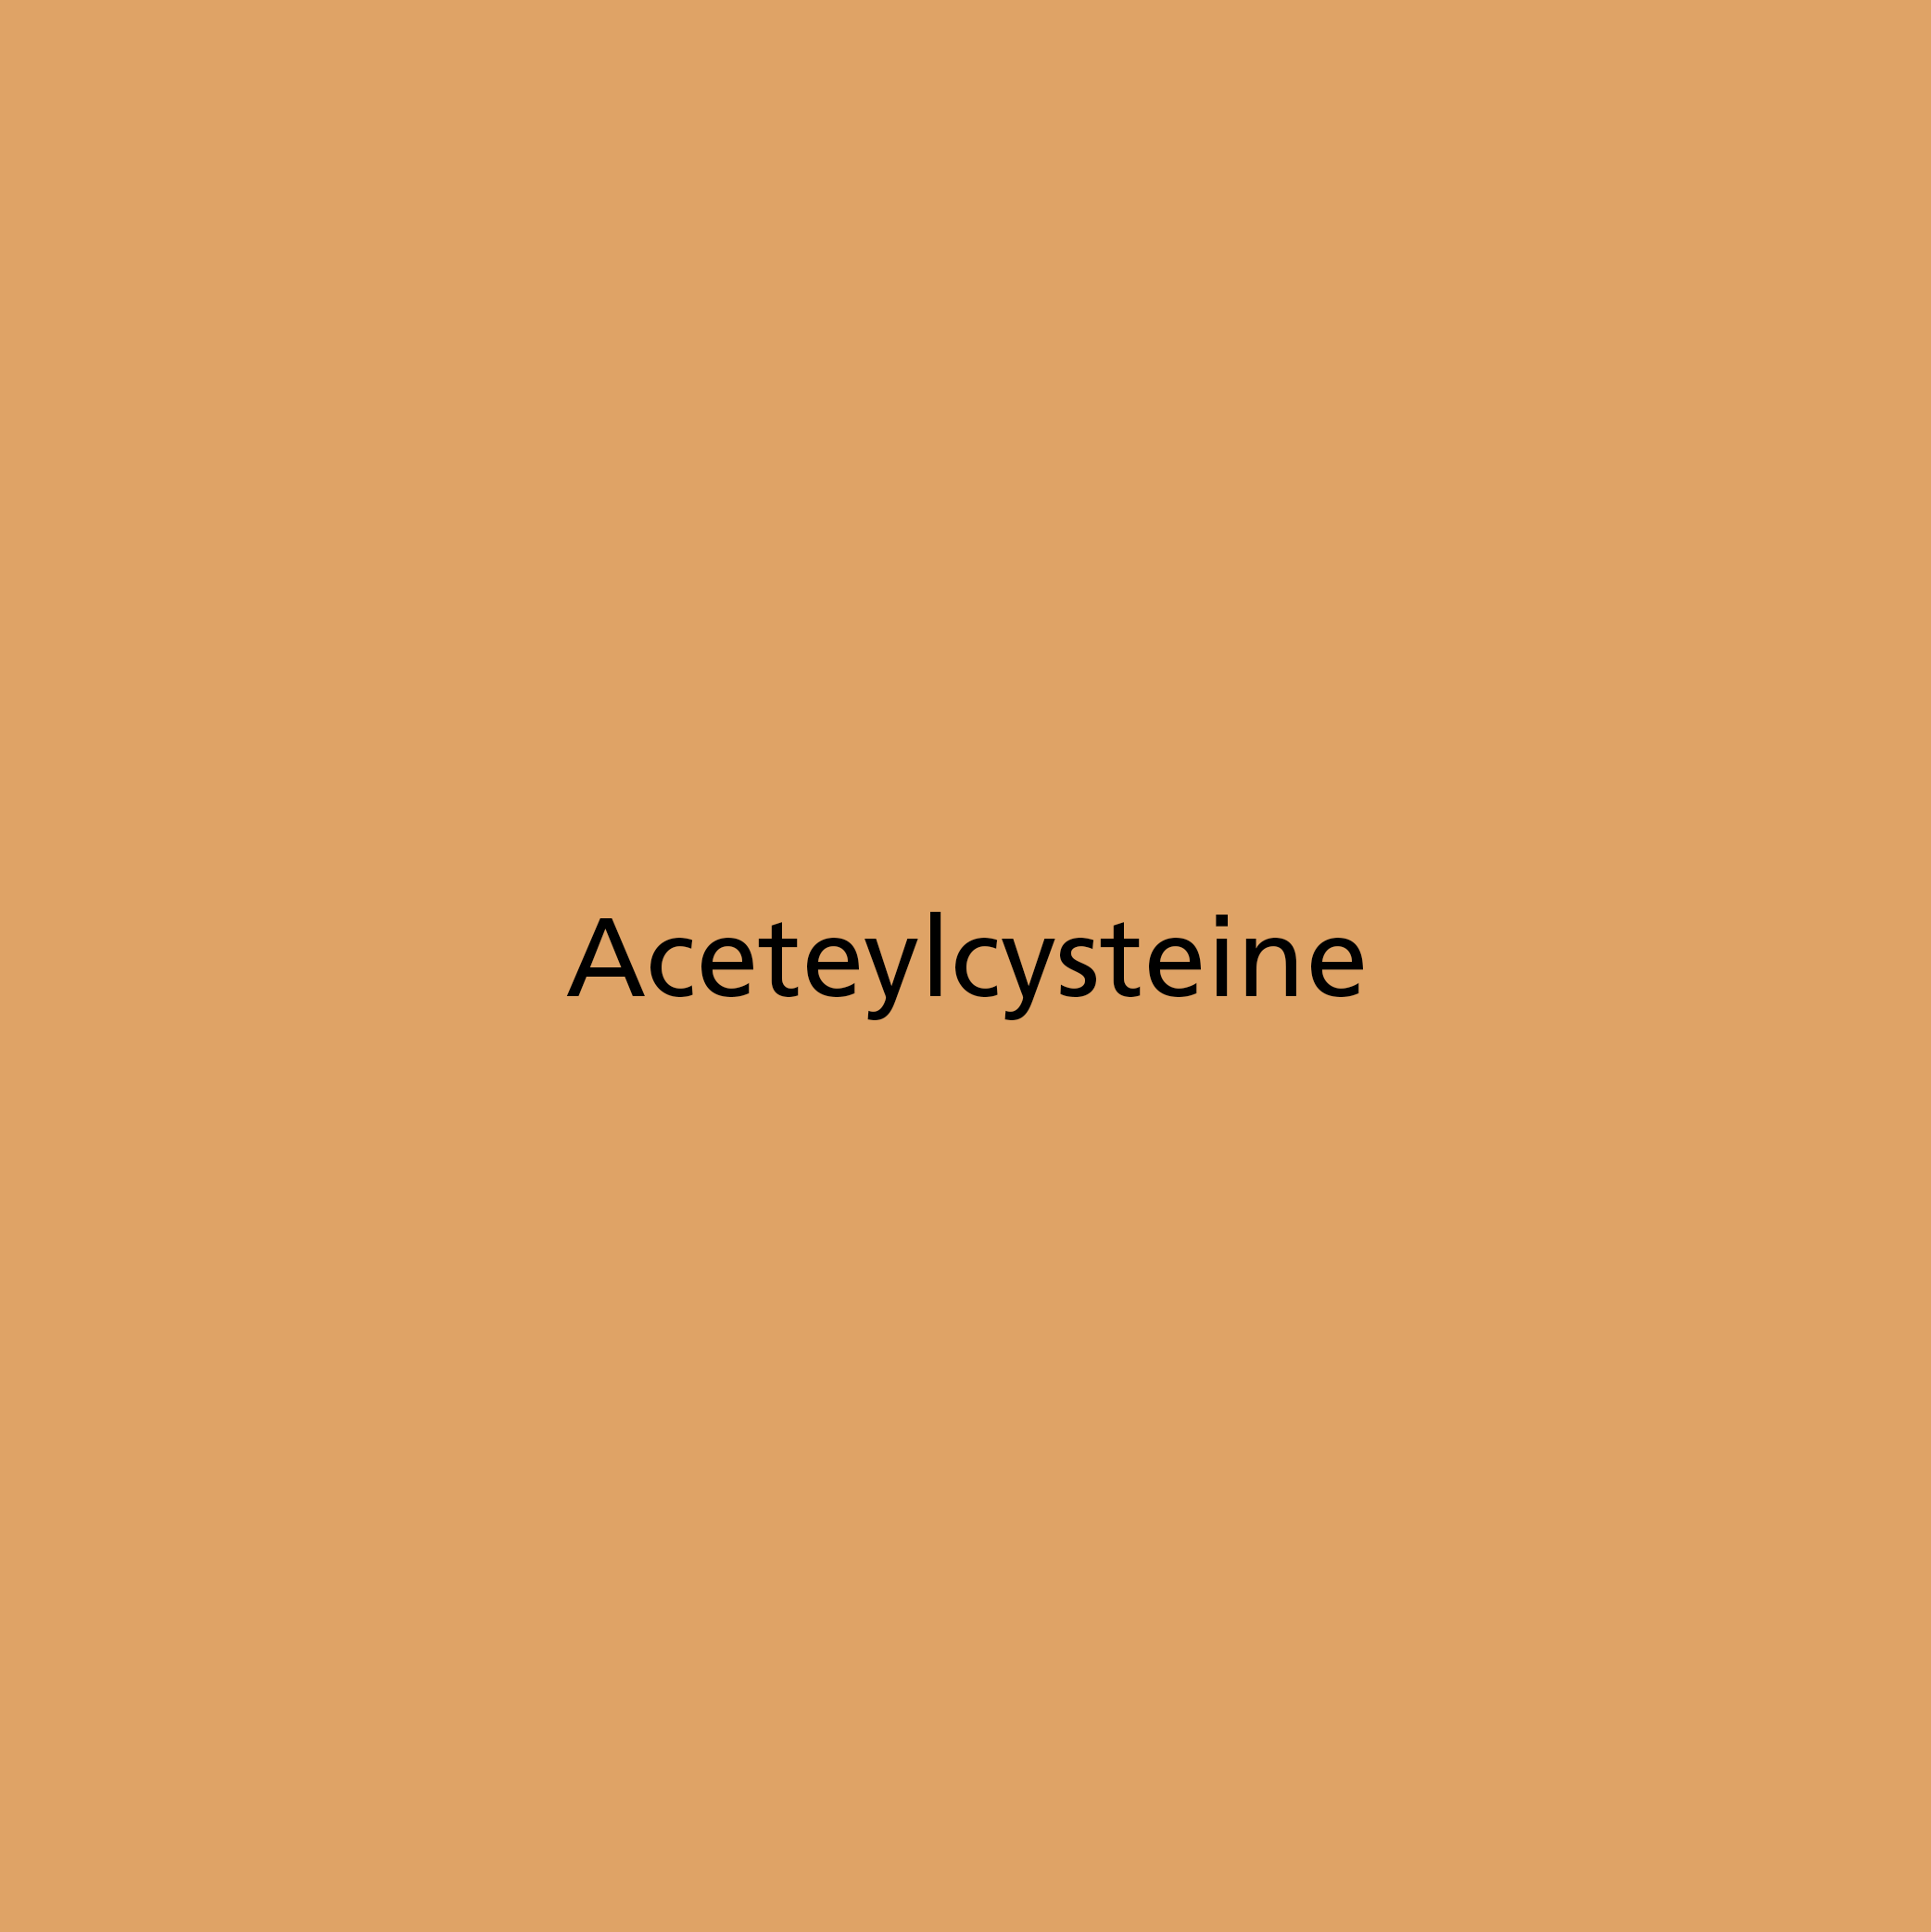 Aceteylcysteine